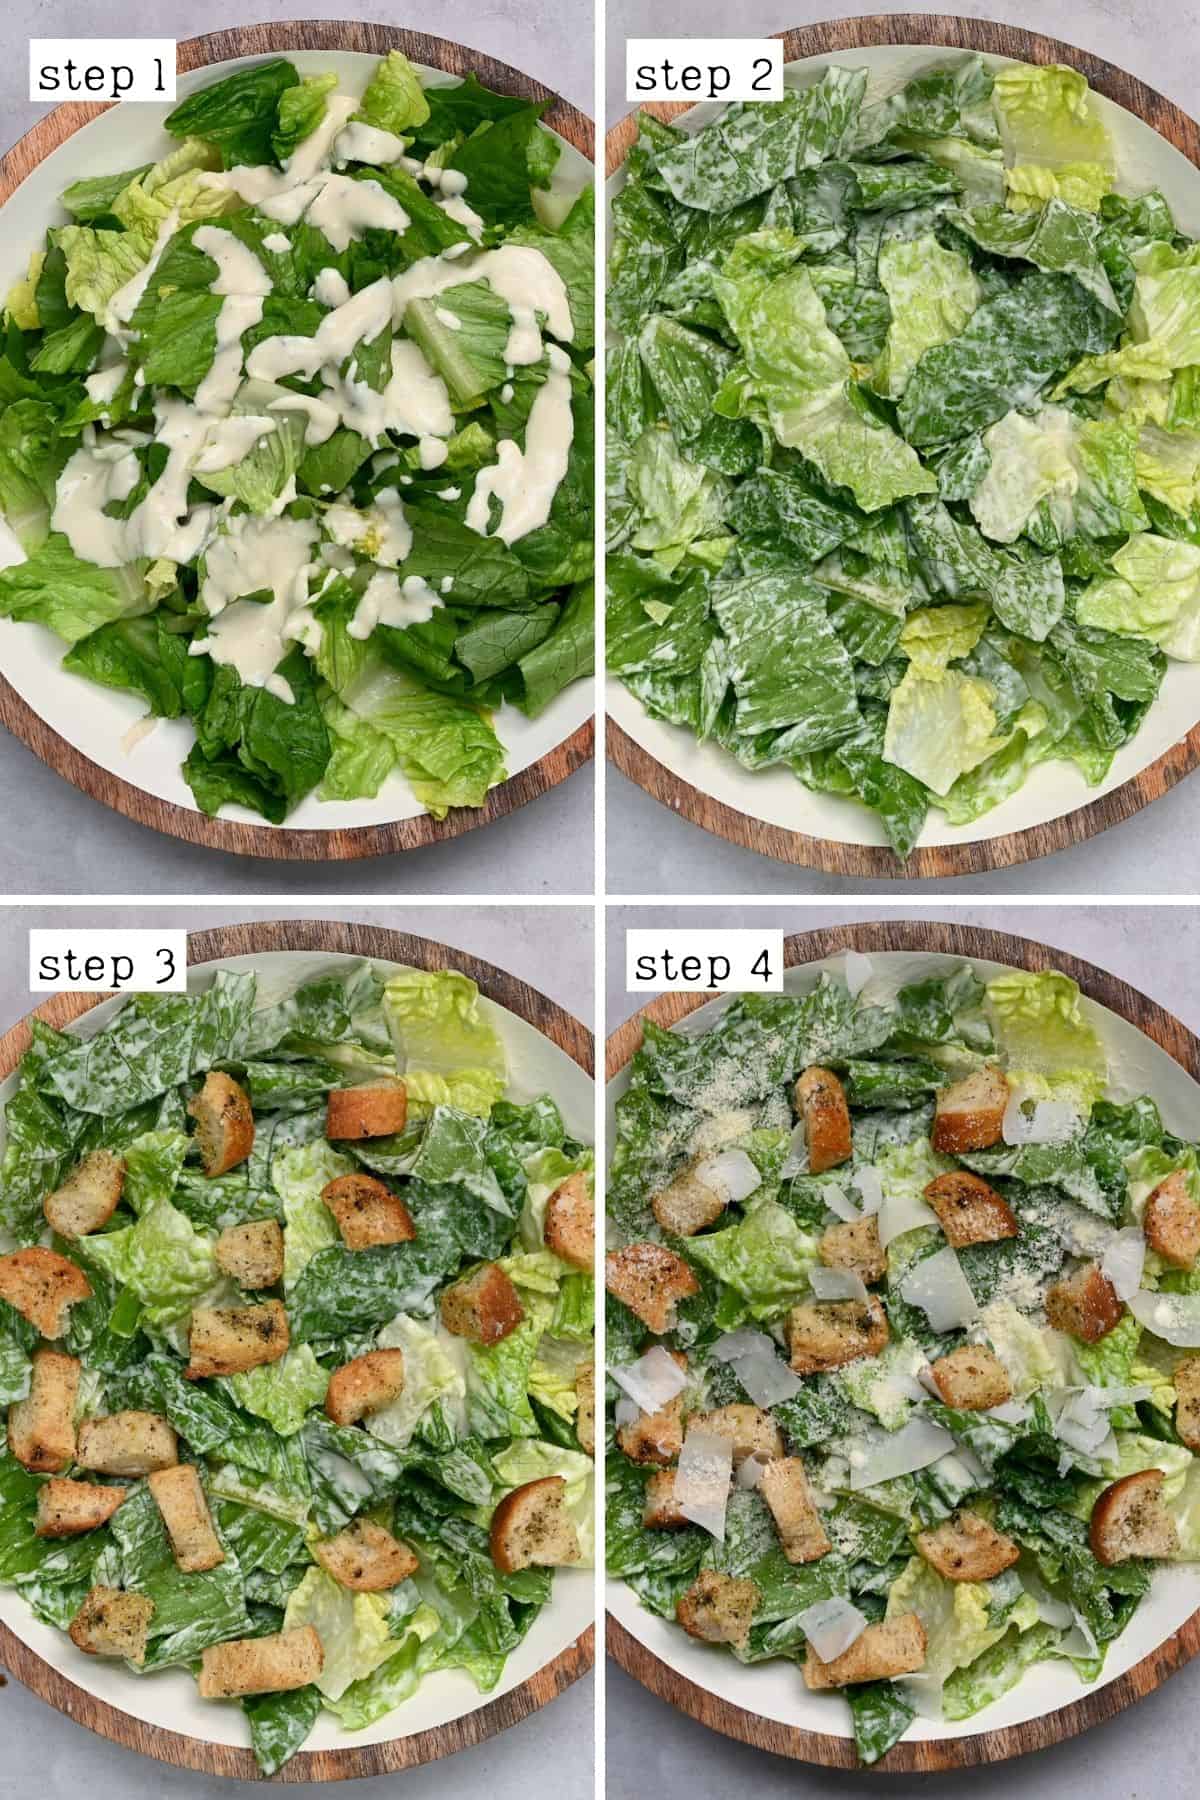 Steps for making Caesar salad